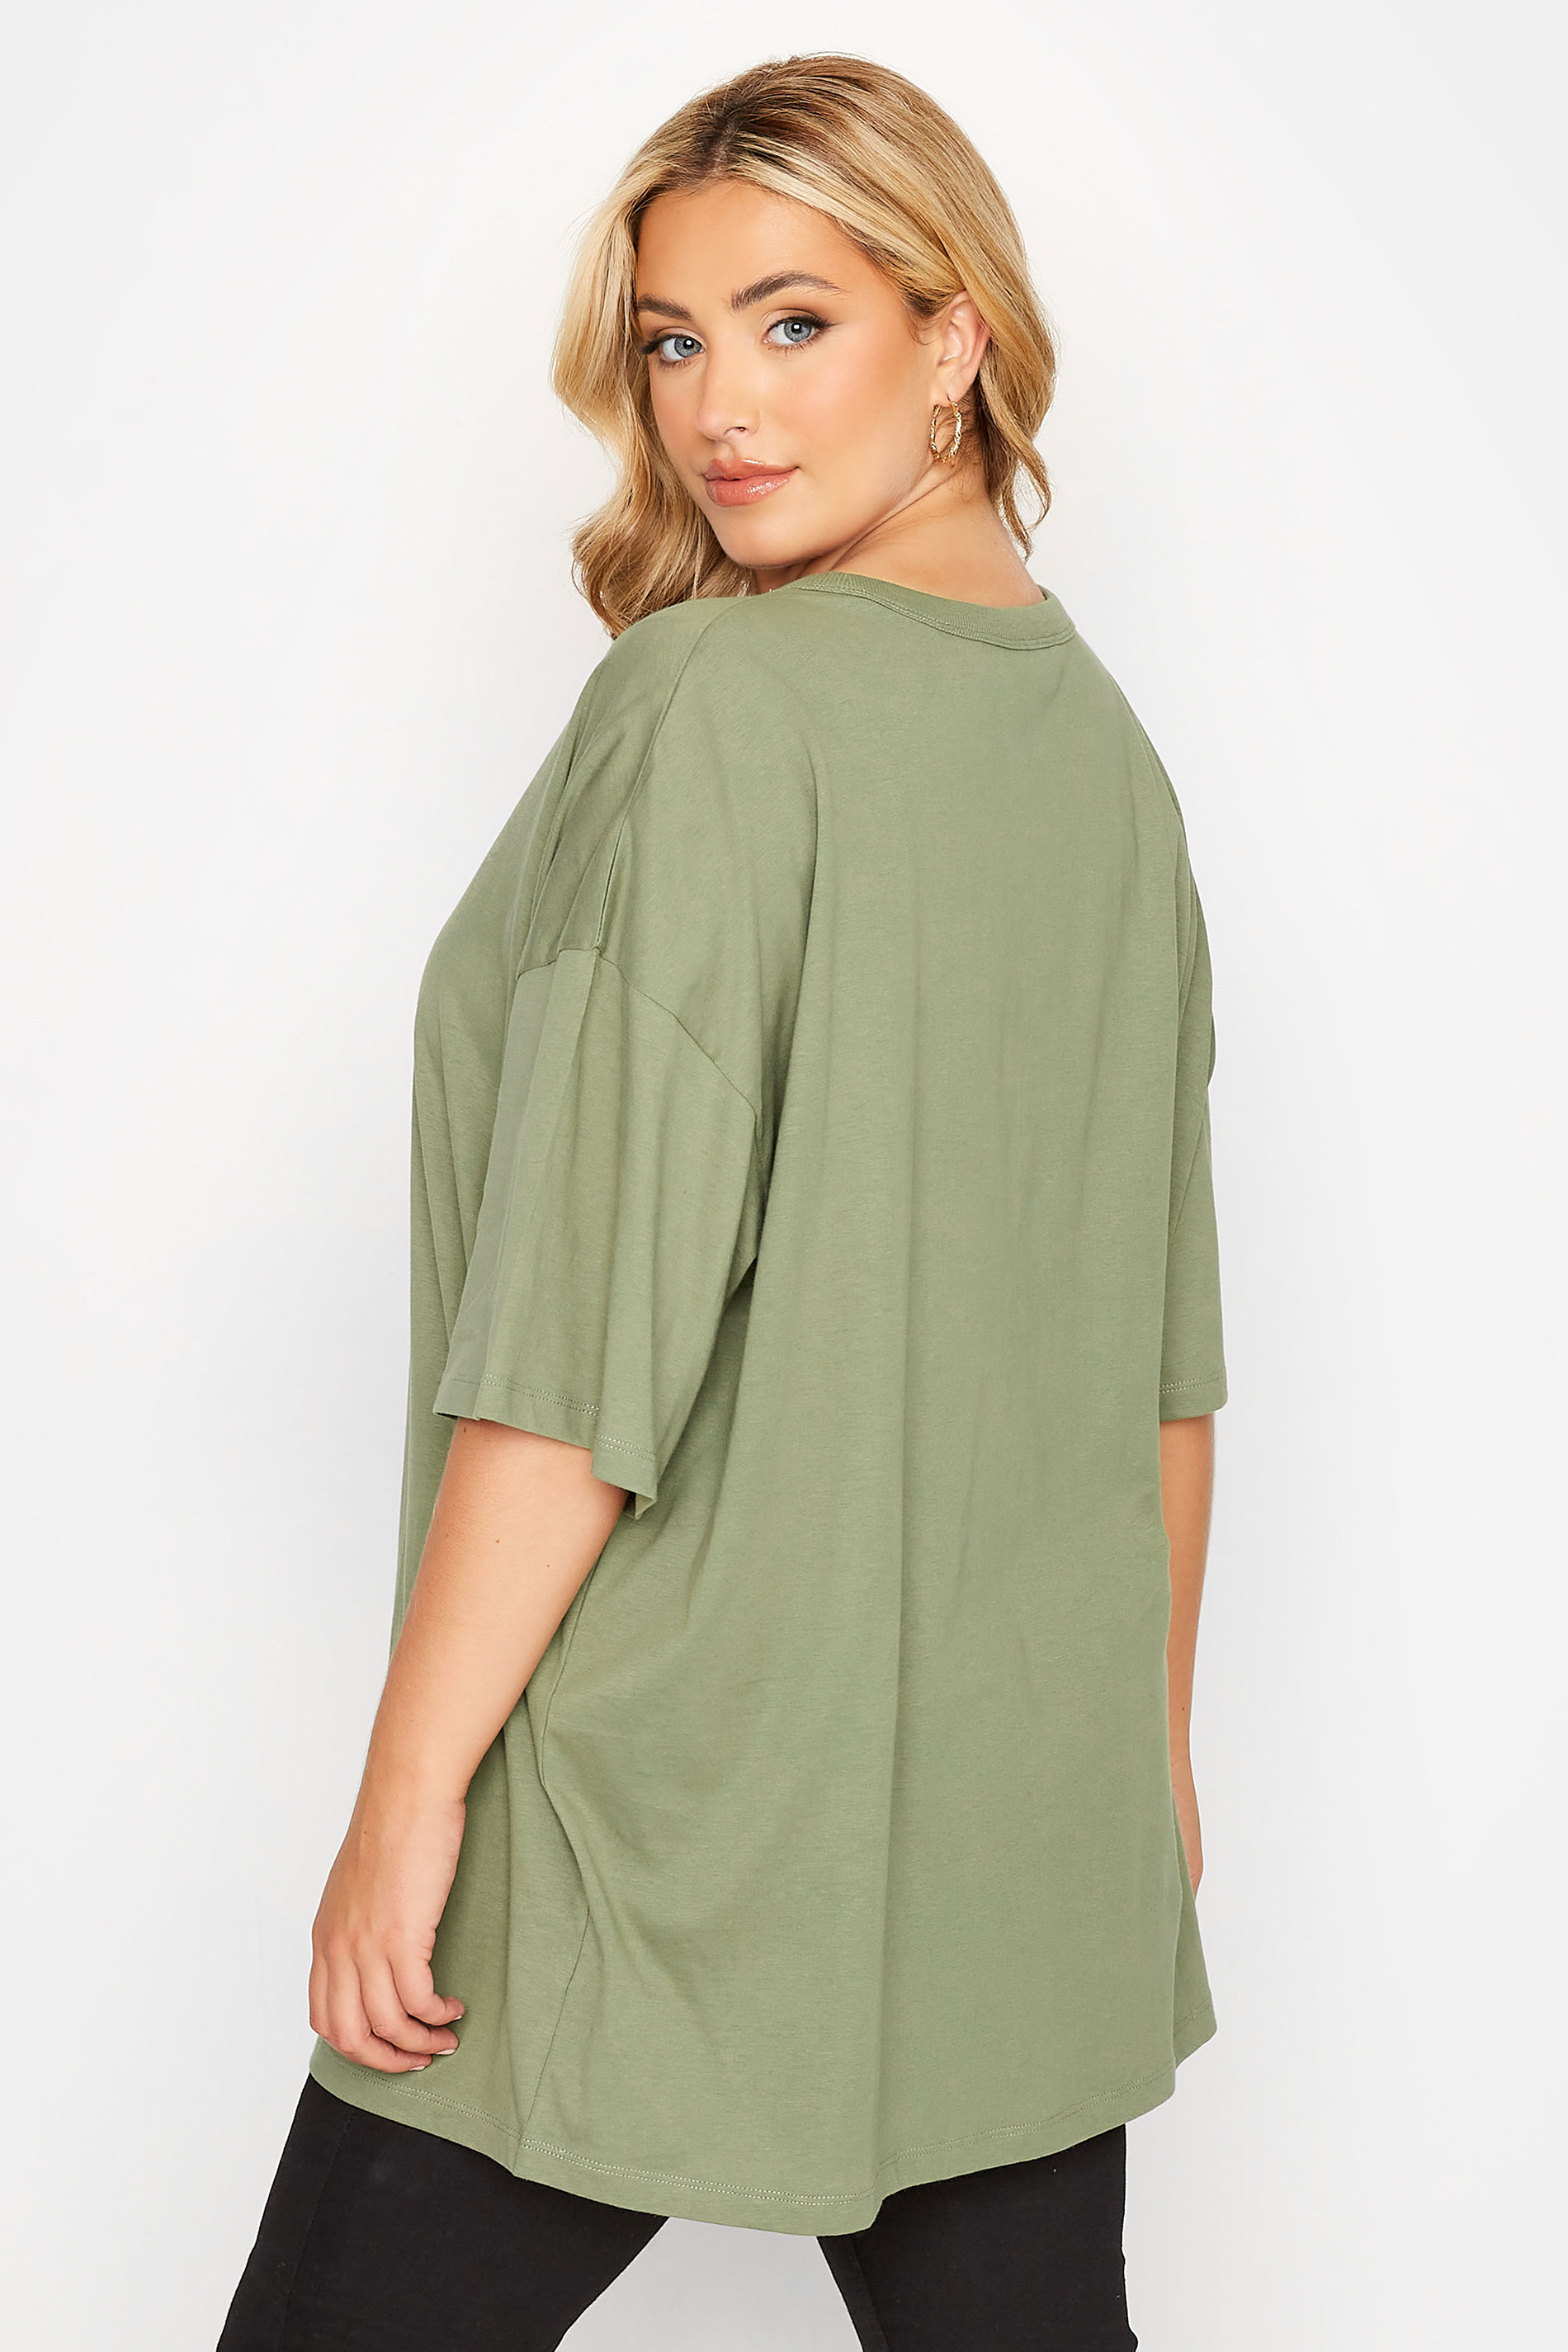 Plus Size Khaki Green Oversized Boxy T-Shirt | Yours Clothing 3